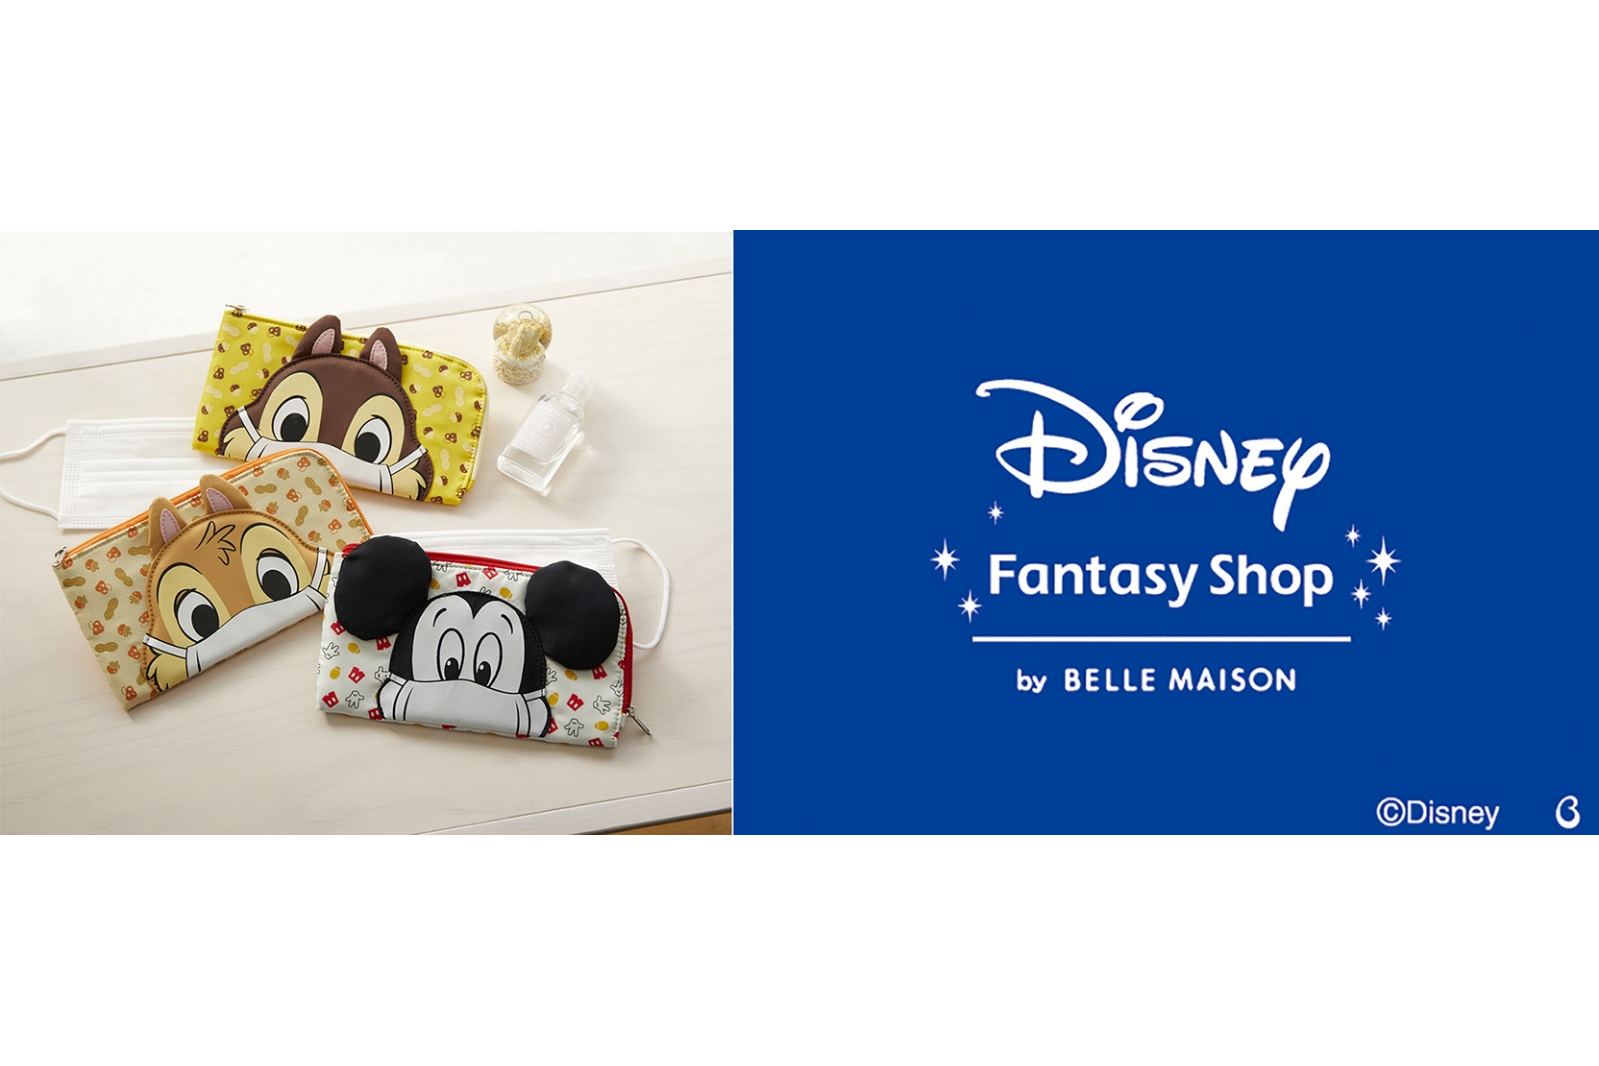 品川駅にディズニー商品を販売する Disney Fantasy Shop By Belle Maison 期間限定オープン ディズニー ツイステッドワンダーランド 商品も販売予定 トラベル Watch